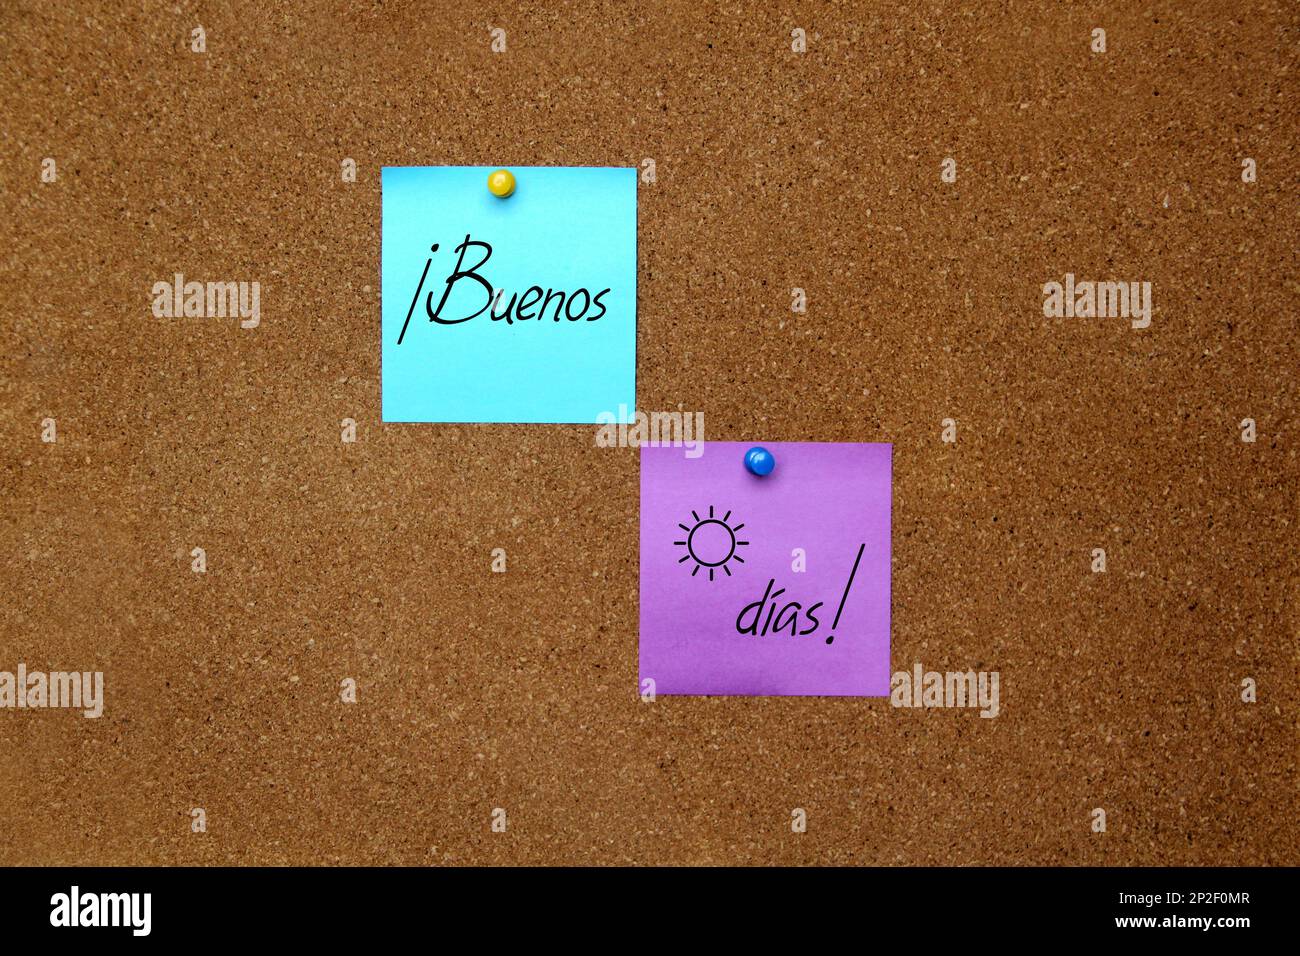 Mehrfarbige Notizen mit wichtigen Botschaften, Motivationen und Erinnerungen auf Korktafel und „Guten Morgen“ in spanischer Sprache Stockfoto